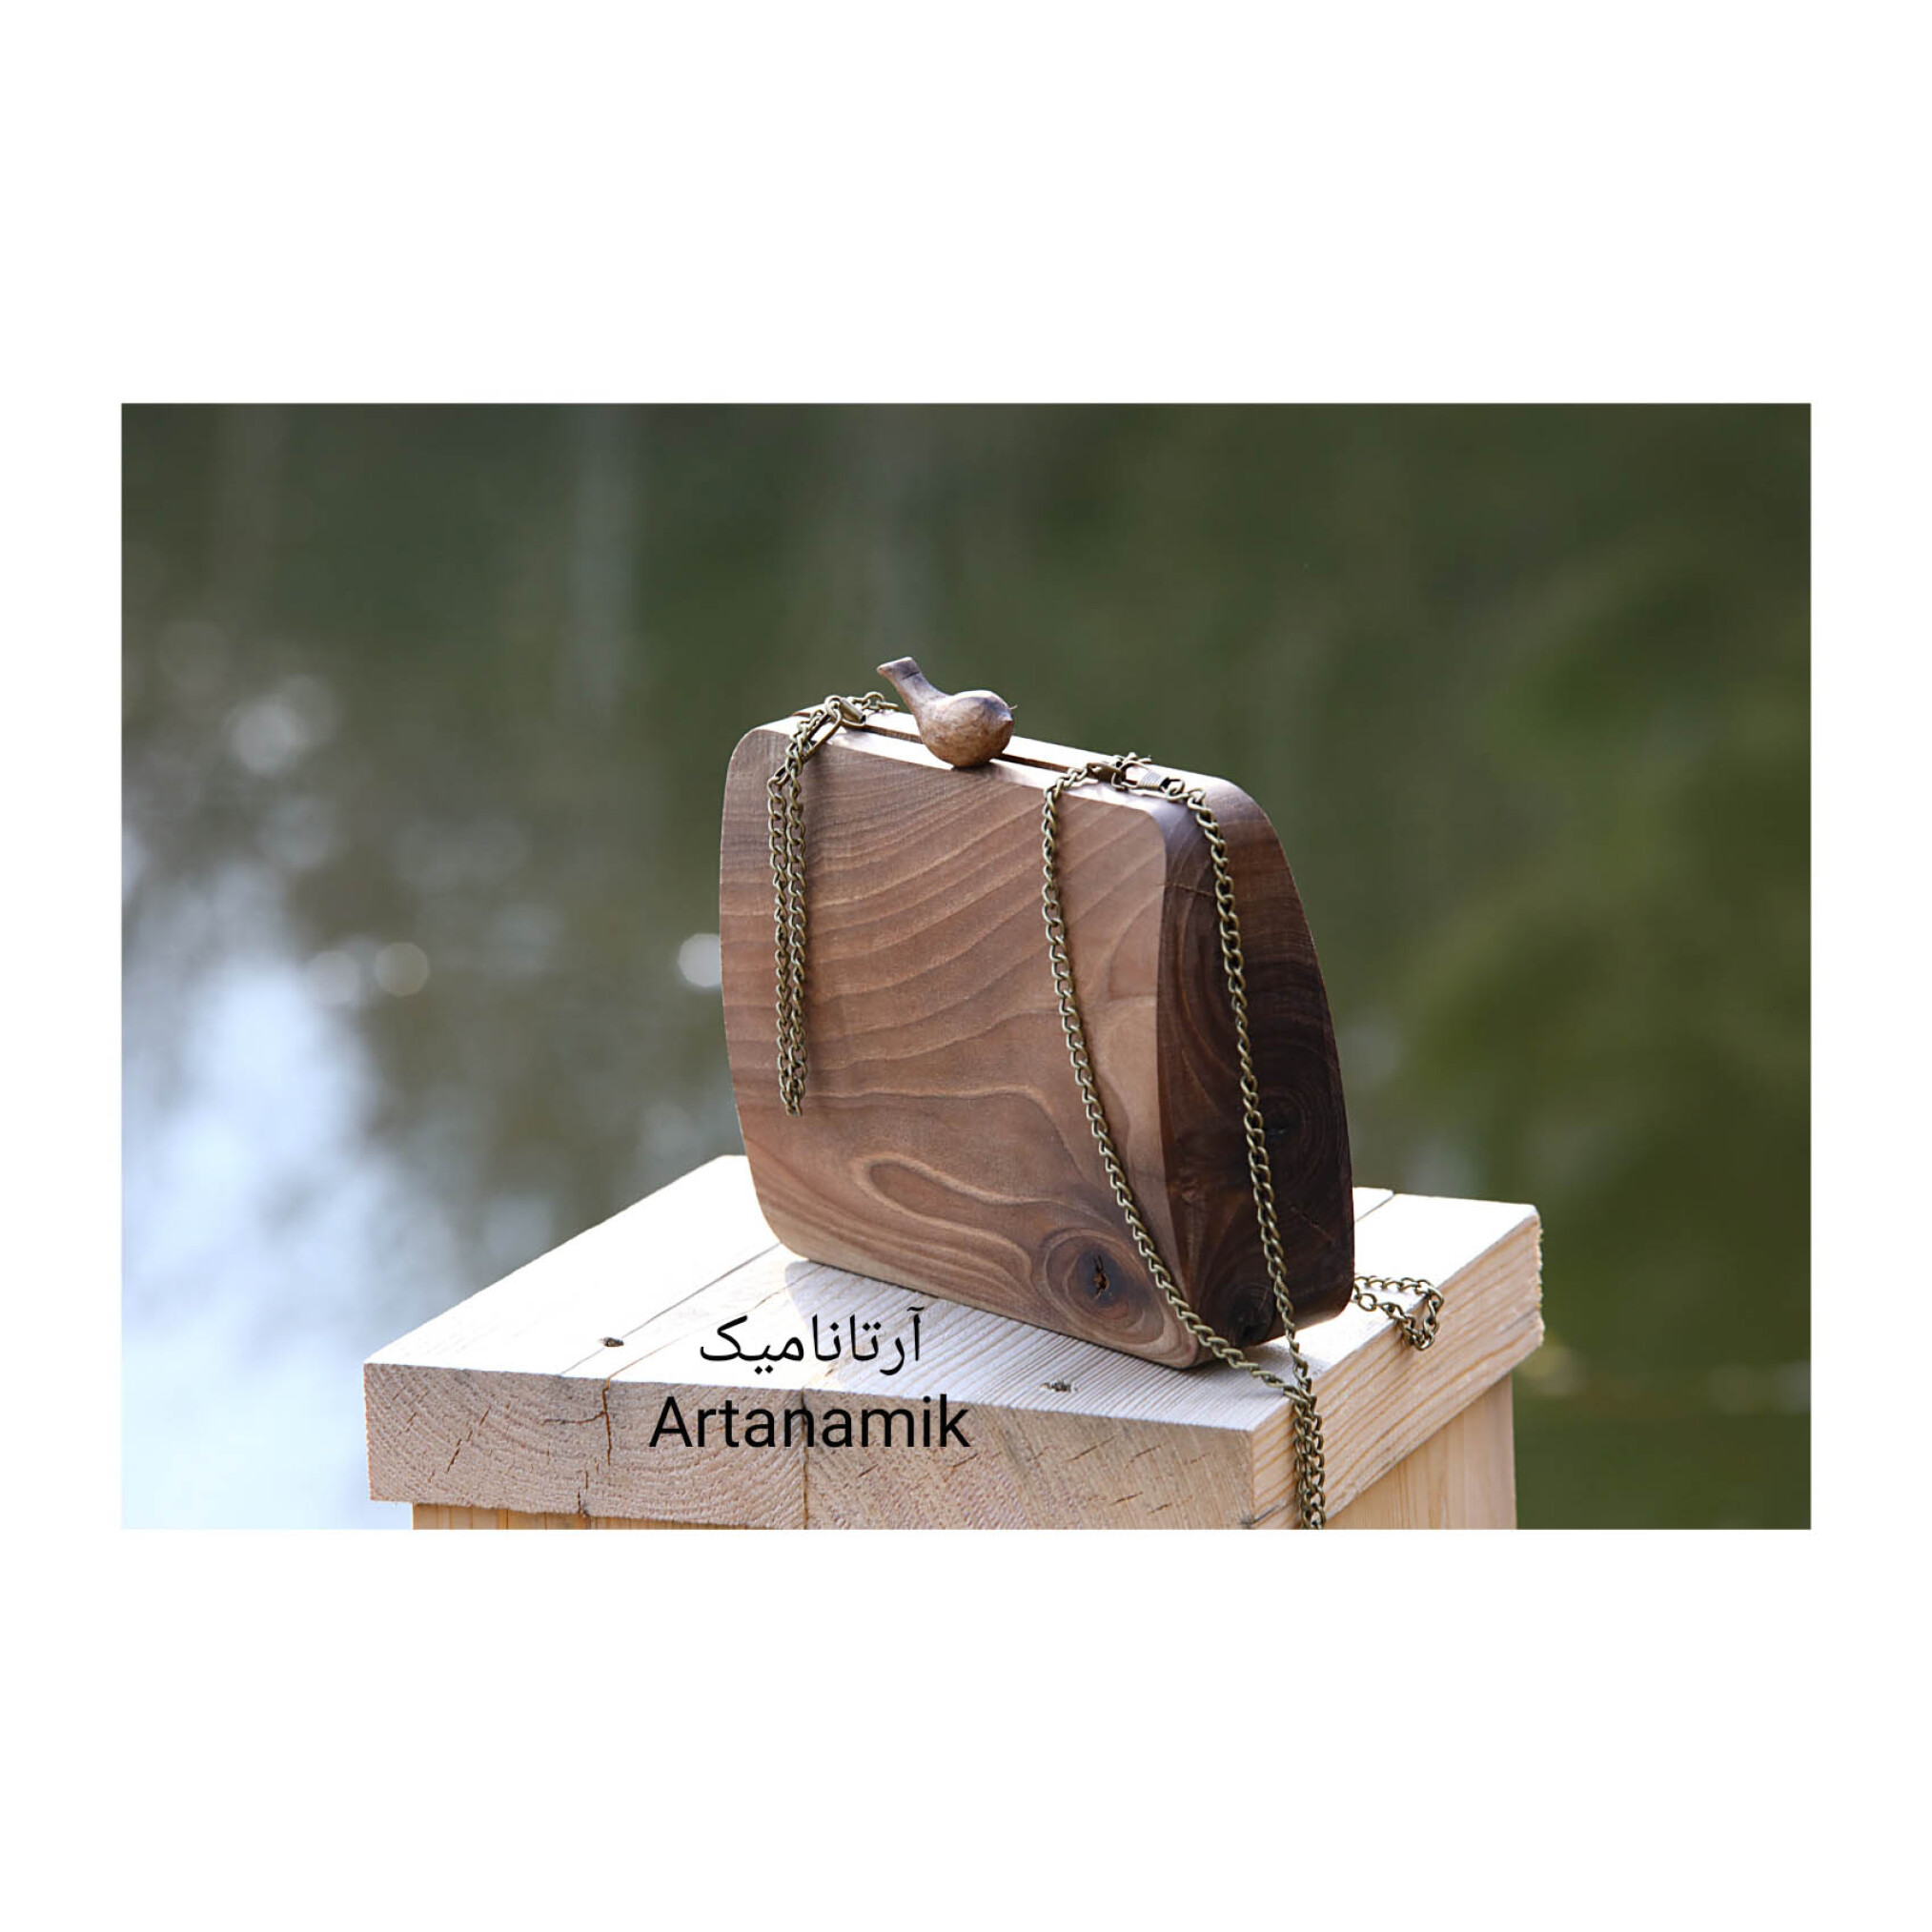  کیف چوبی کادویی طرح مرغ آمین، ساخته شده از چوب گردو | آرتانامیک 